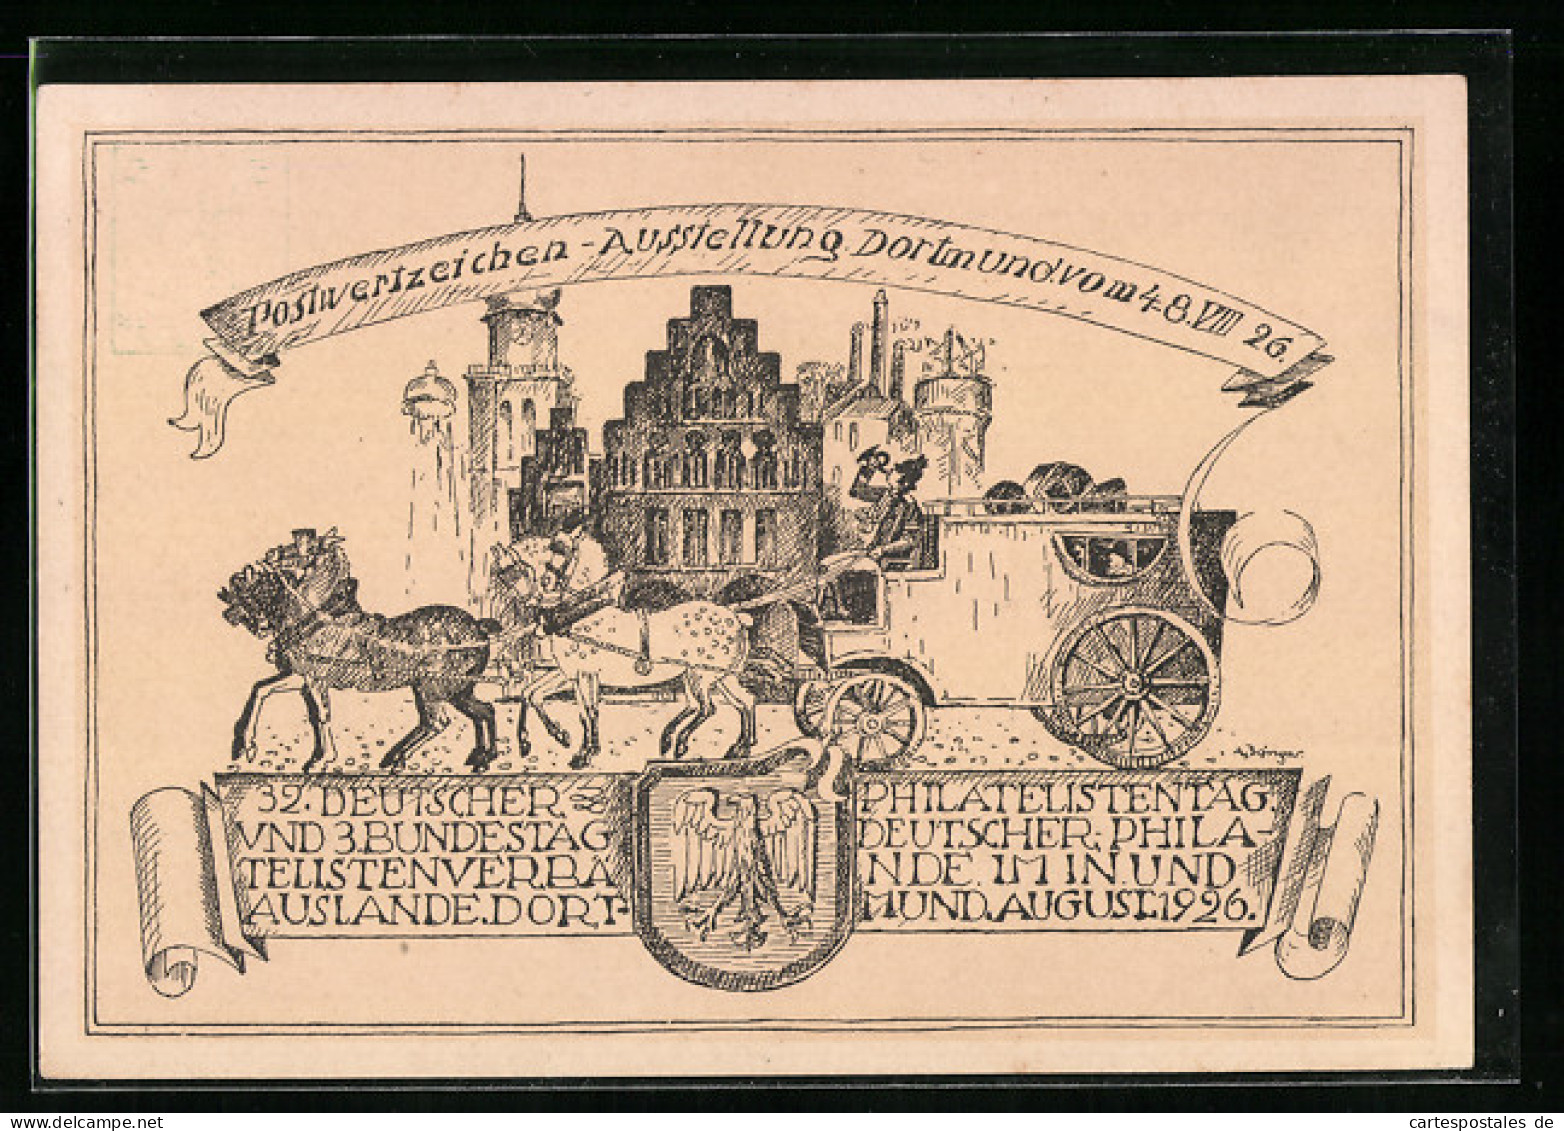 Künstler-AK Ganzsache PP81C16: Dortmund, Postwertzeichen-Ausstellung 1926, Postkutsche  - Stamps (pictures)